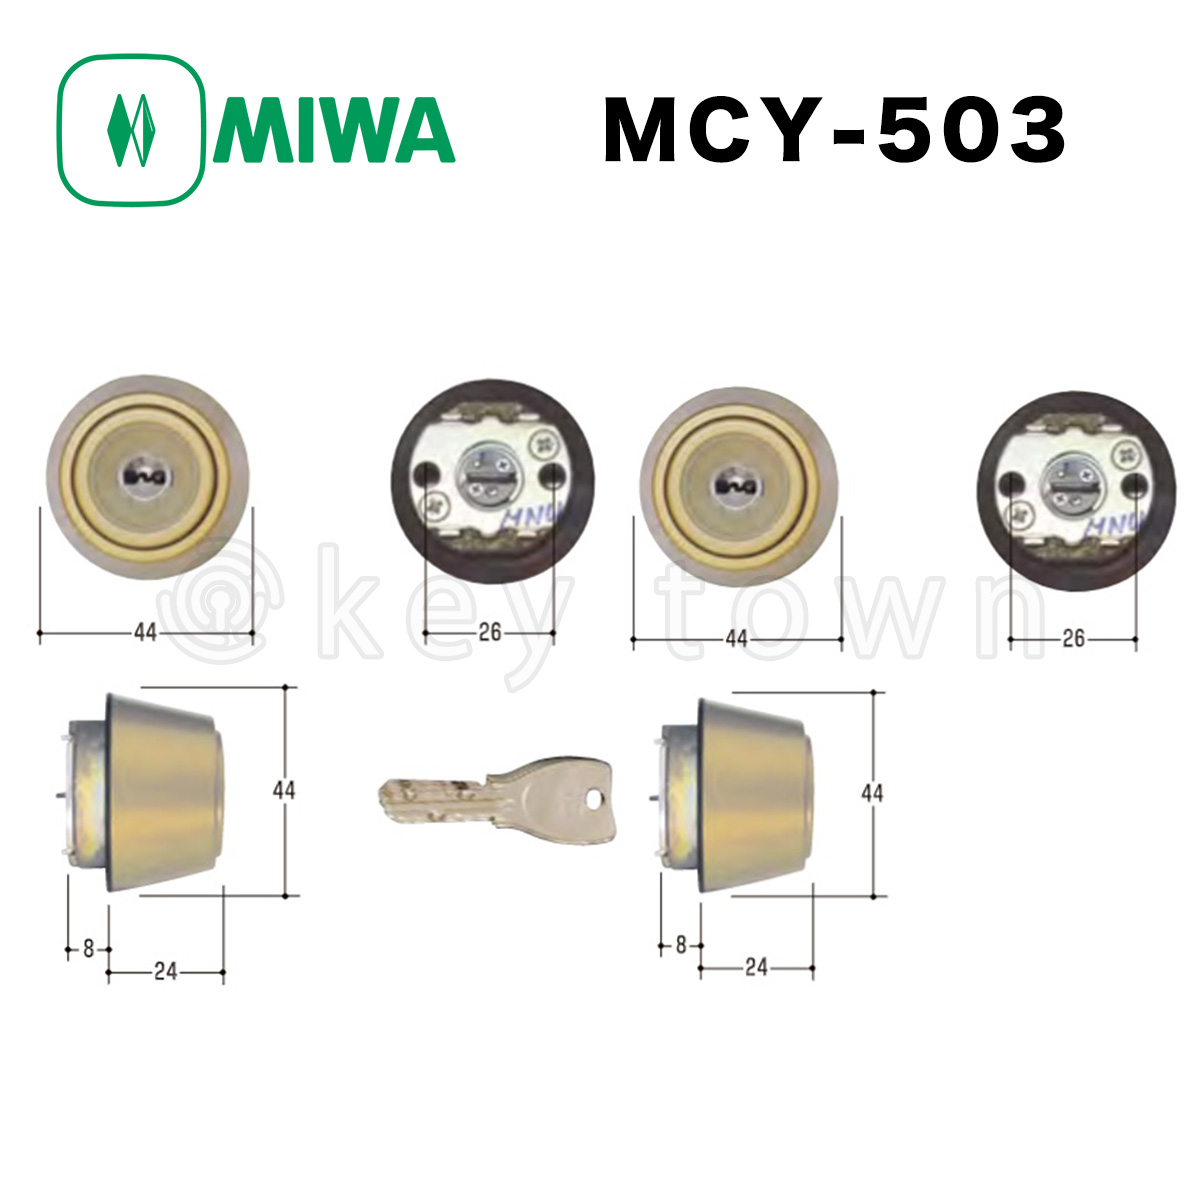 ミズタニ:MIWA取替用シリンダー MCY-503 鍵 交換用